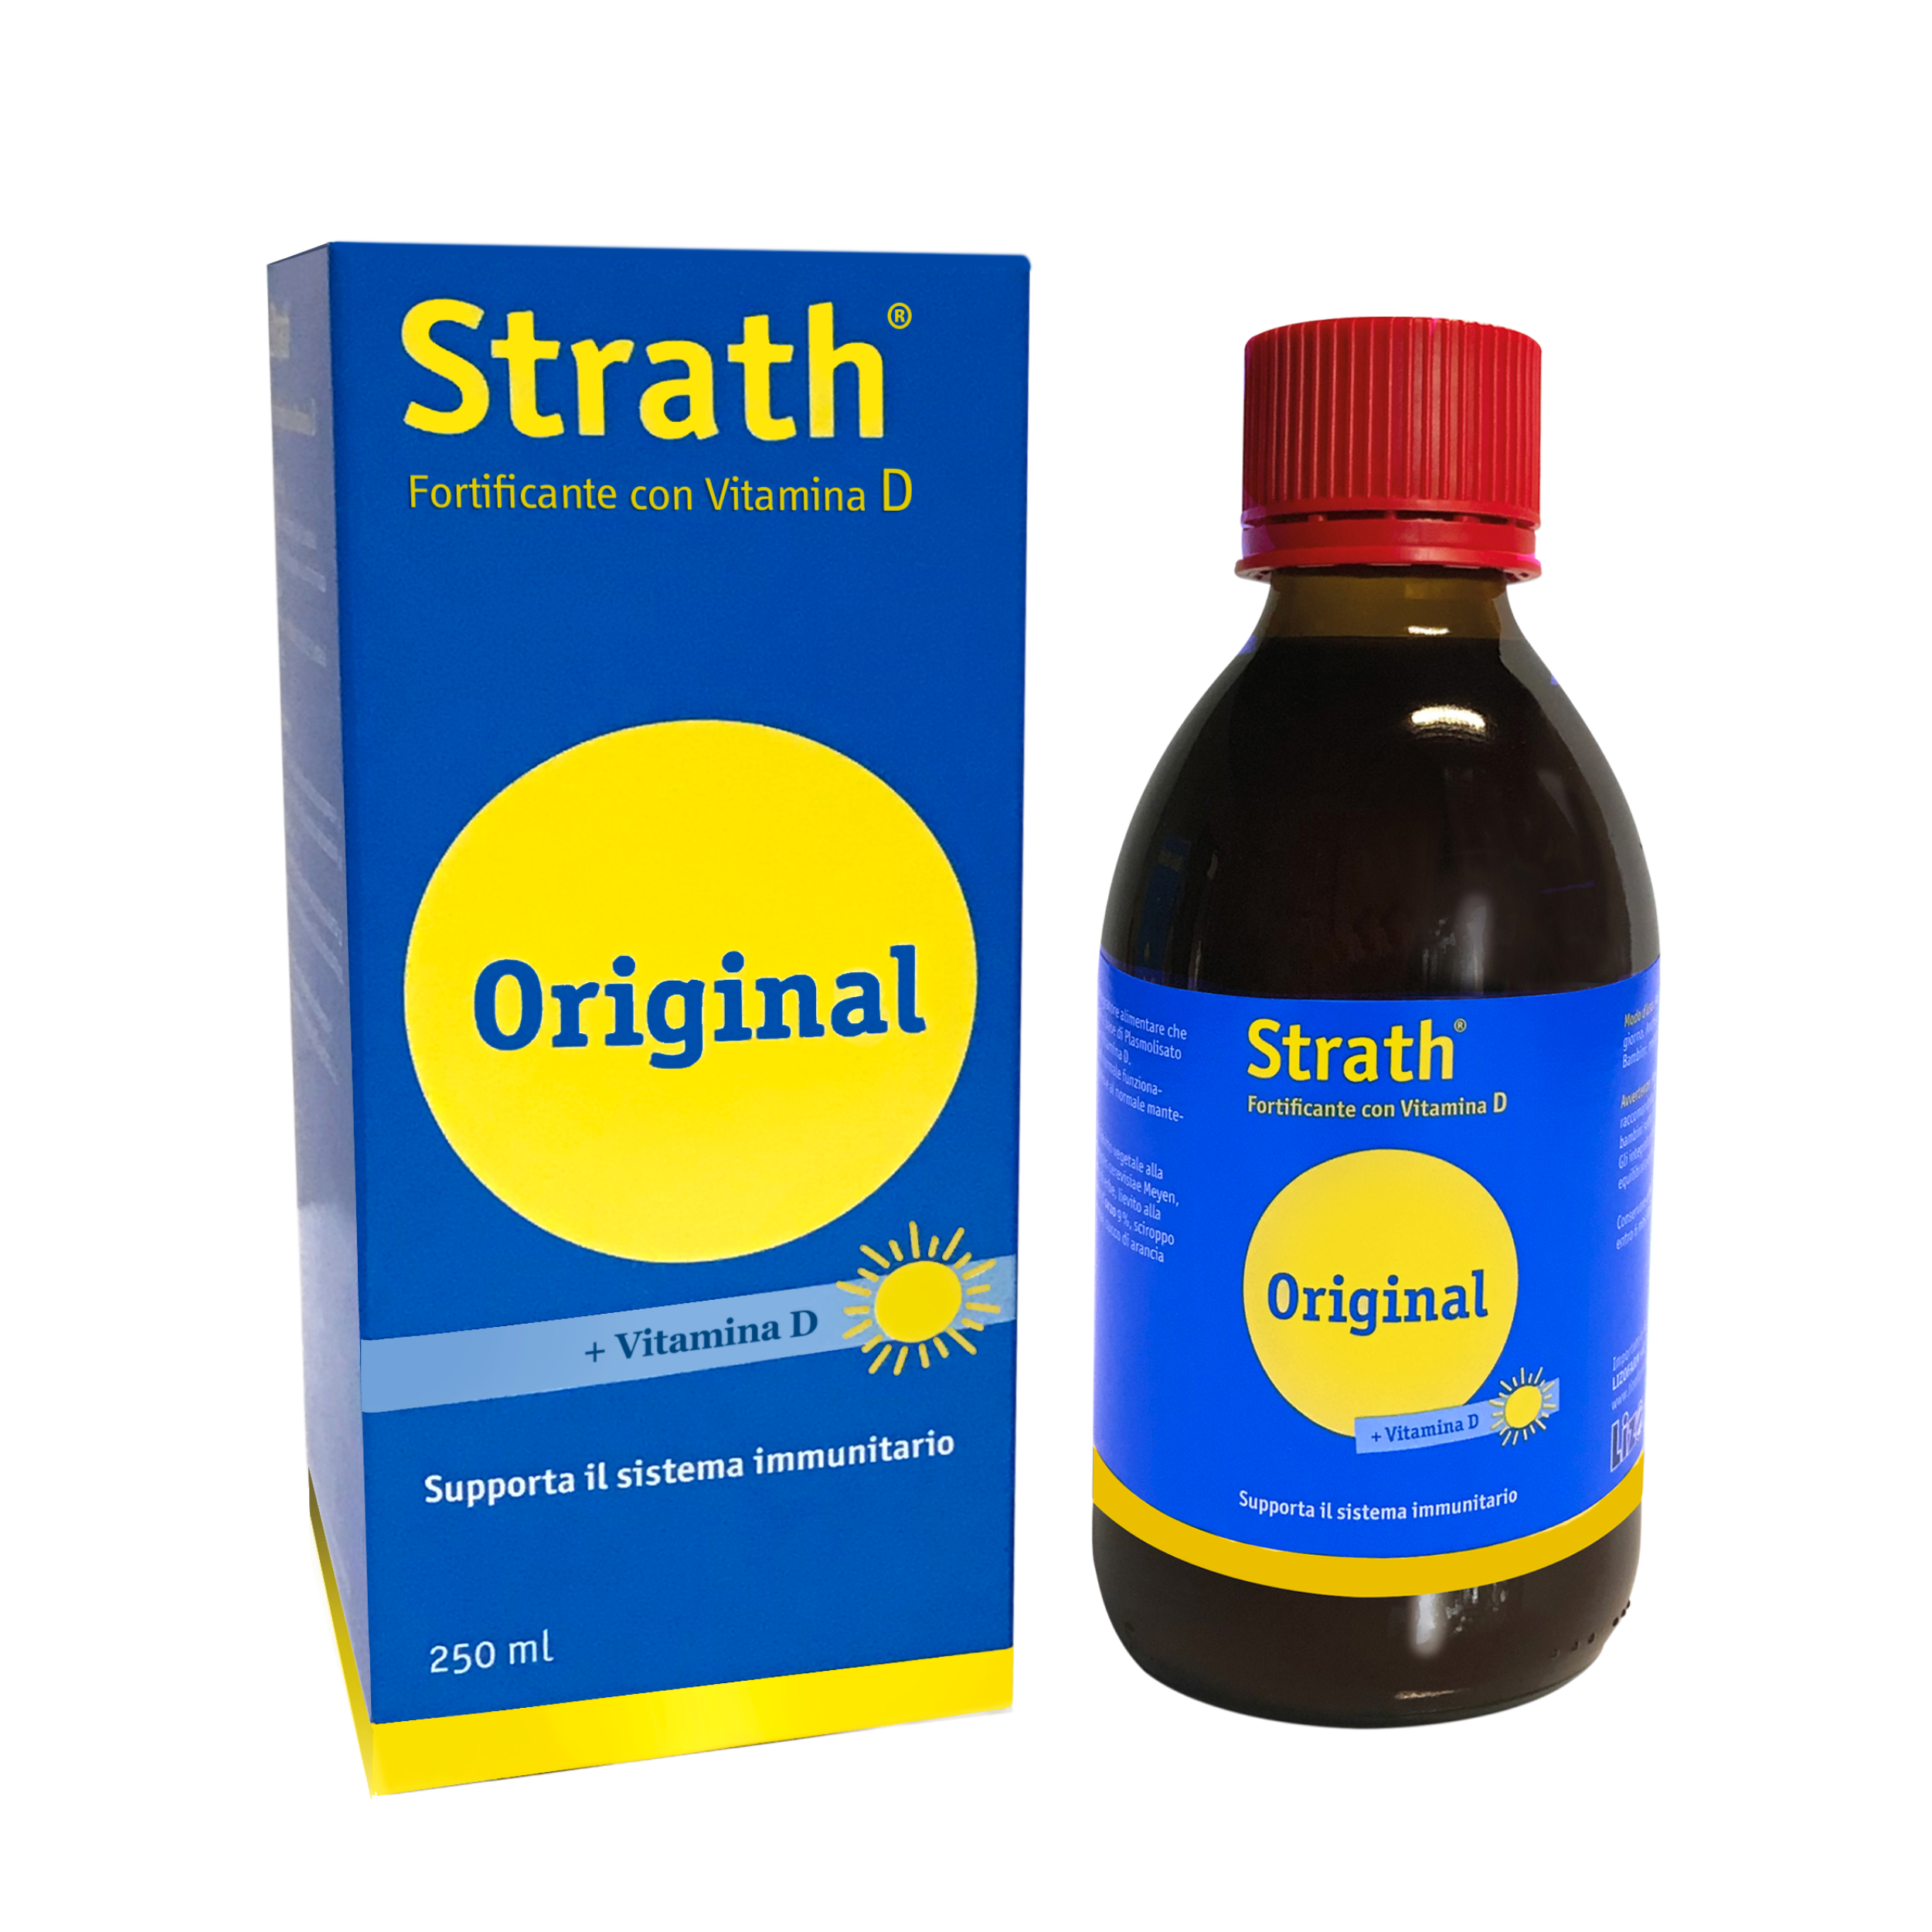 STRATH D - Fortificante con vitamina D #PromoNovembre